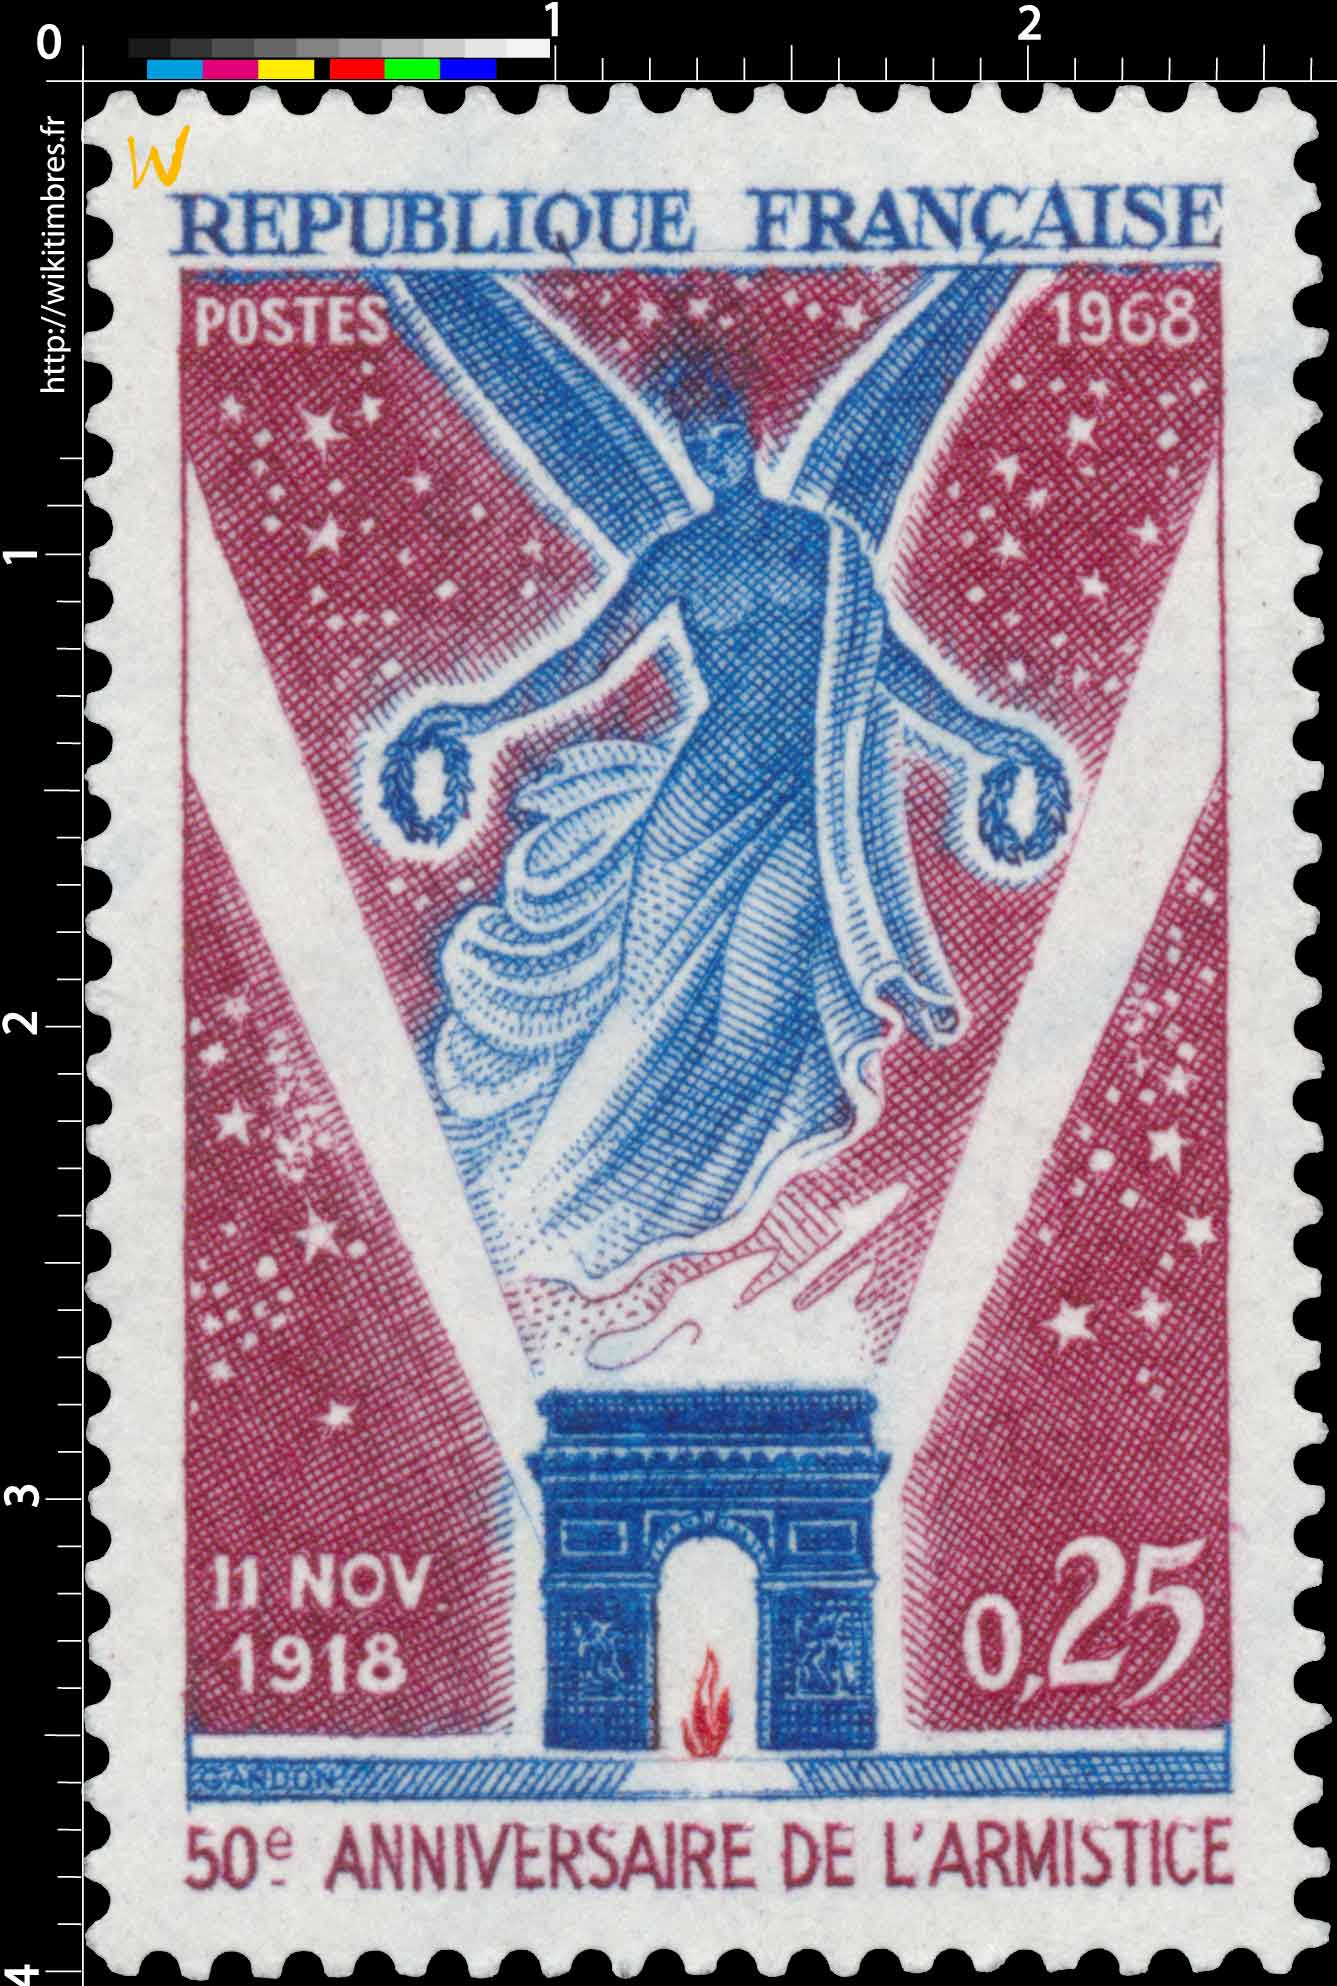 1968 11 NOV. 1918 50e ANNIVERSAIRE DE L'ARMISTICE